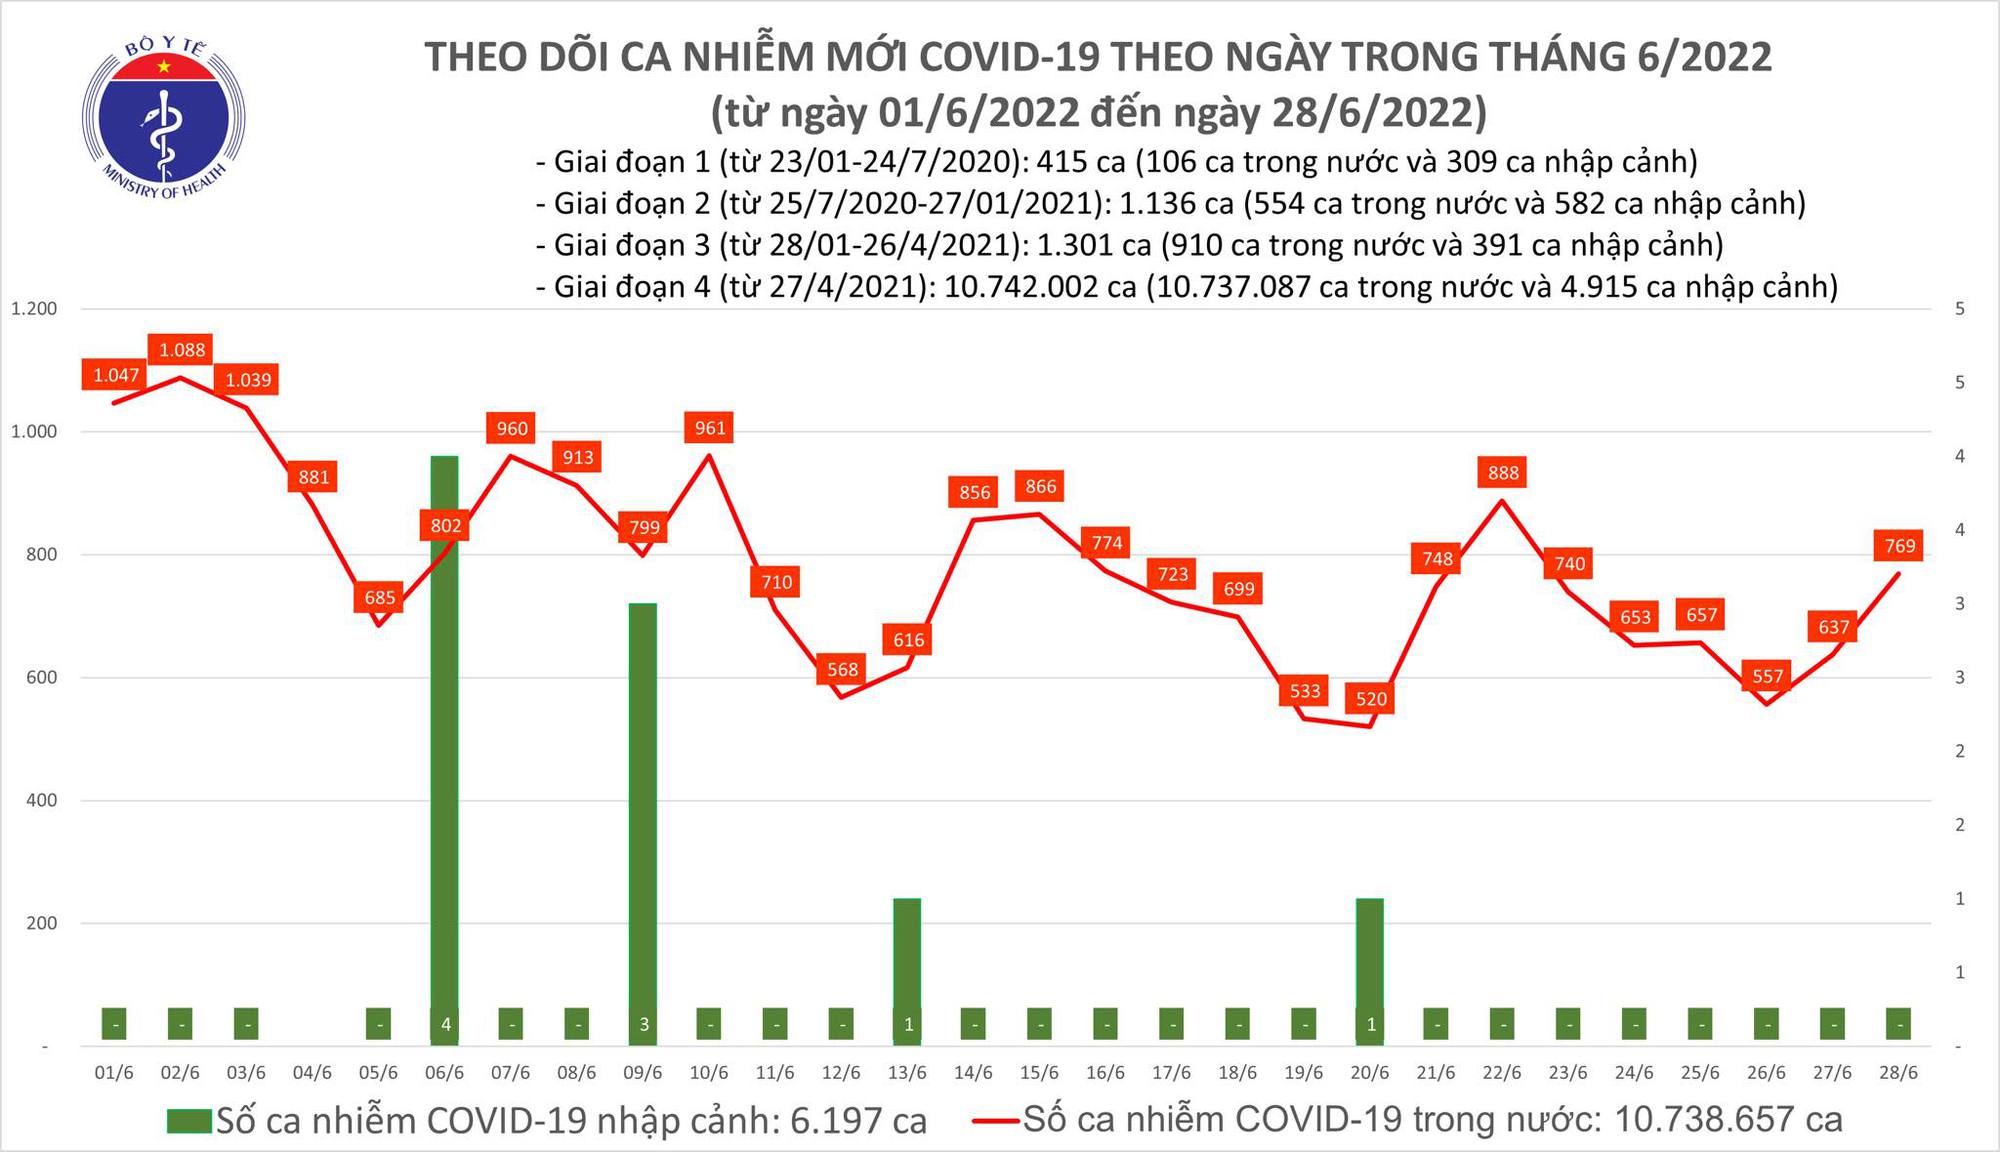 Ngày 28/6: Ca COVID-19 tăng lên 769; Có 3 F0 tại Bến Tre và Quảng Ninh tử vong - Ảnh 1.